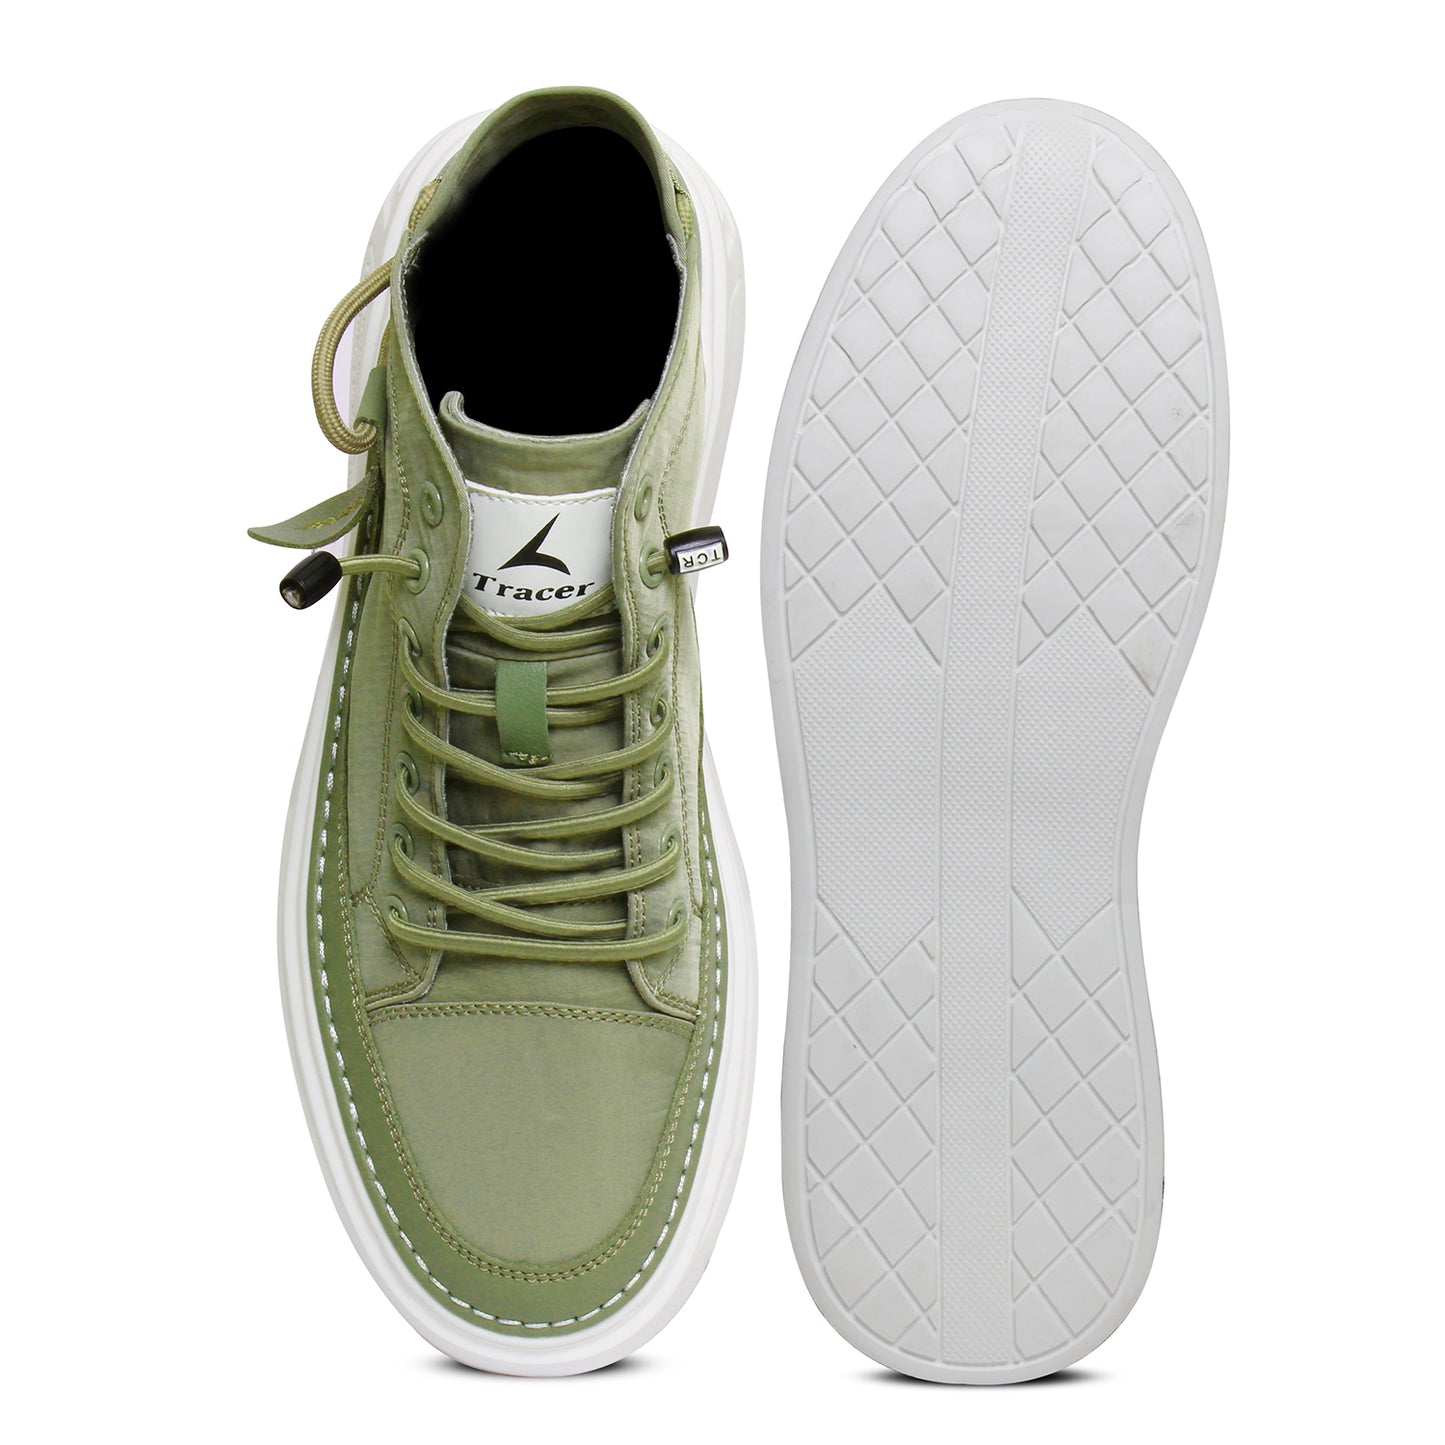 Tracer Sledge 2811 Sneaker for Men's Sage Green